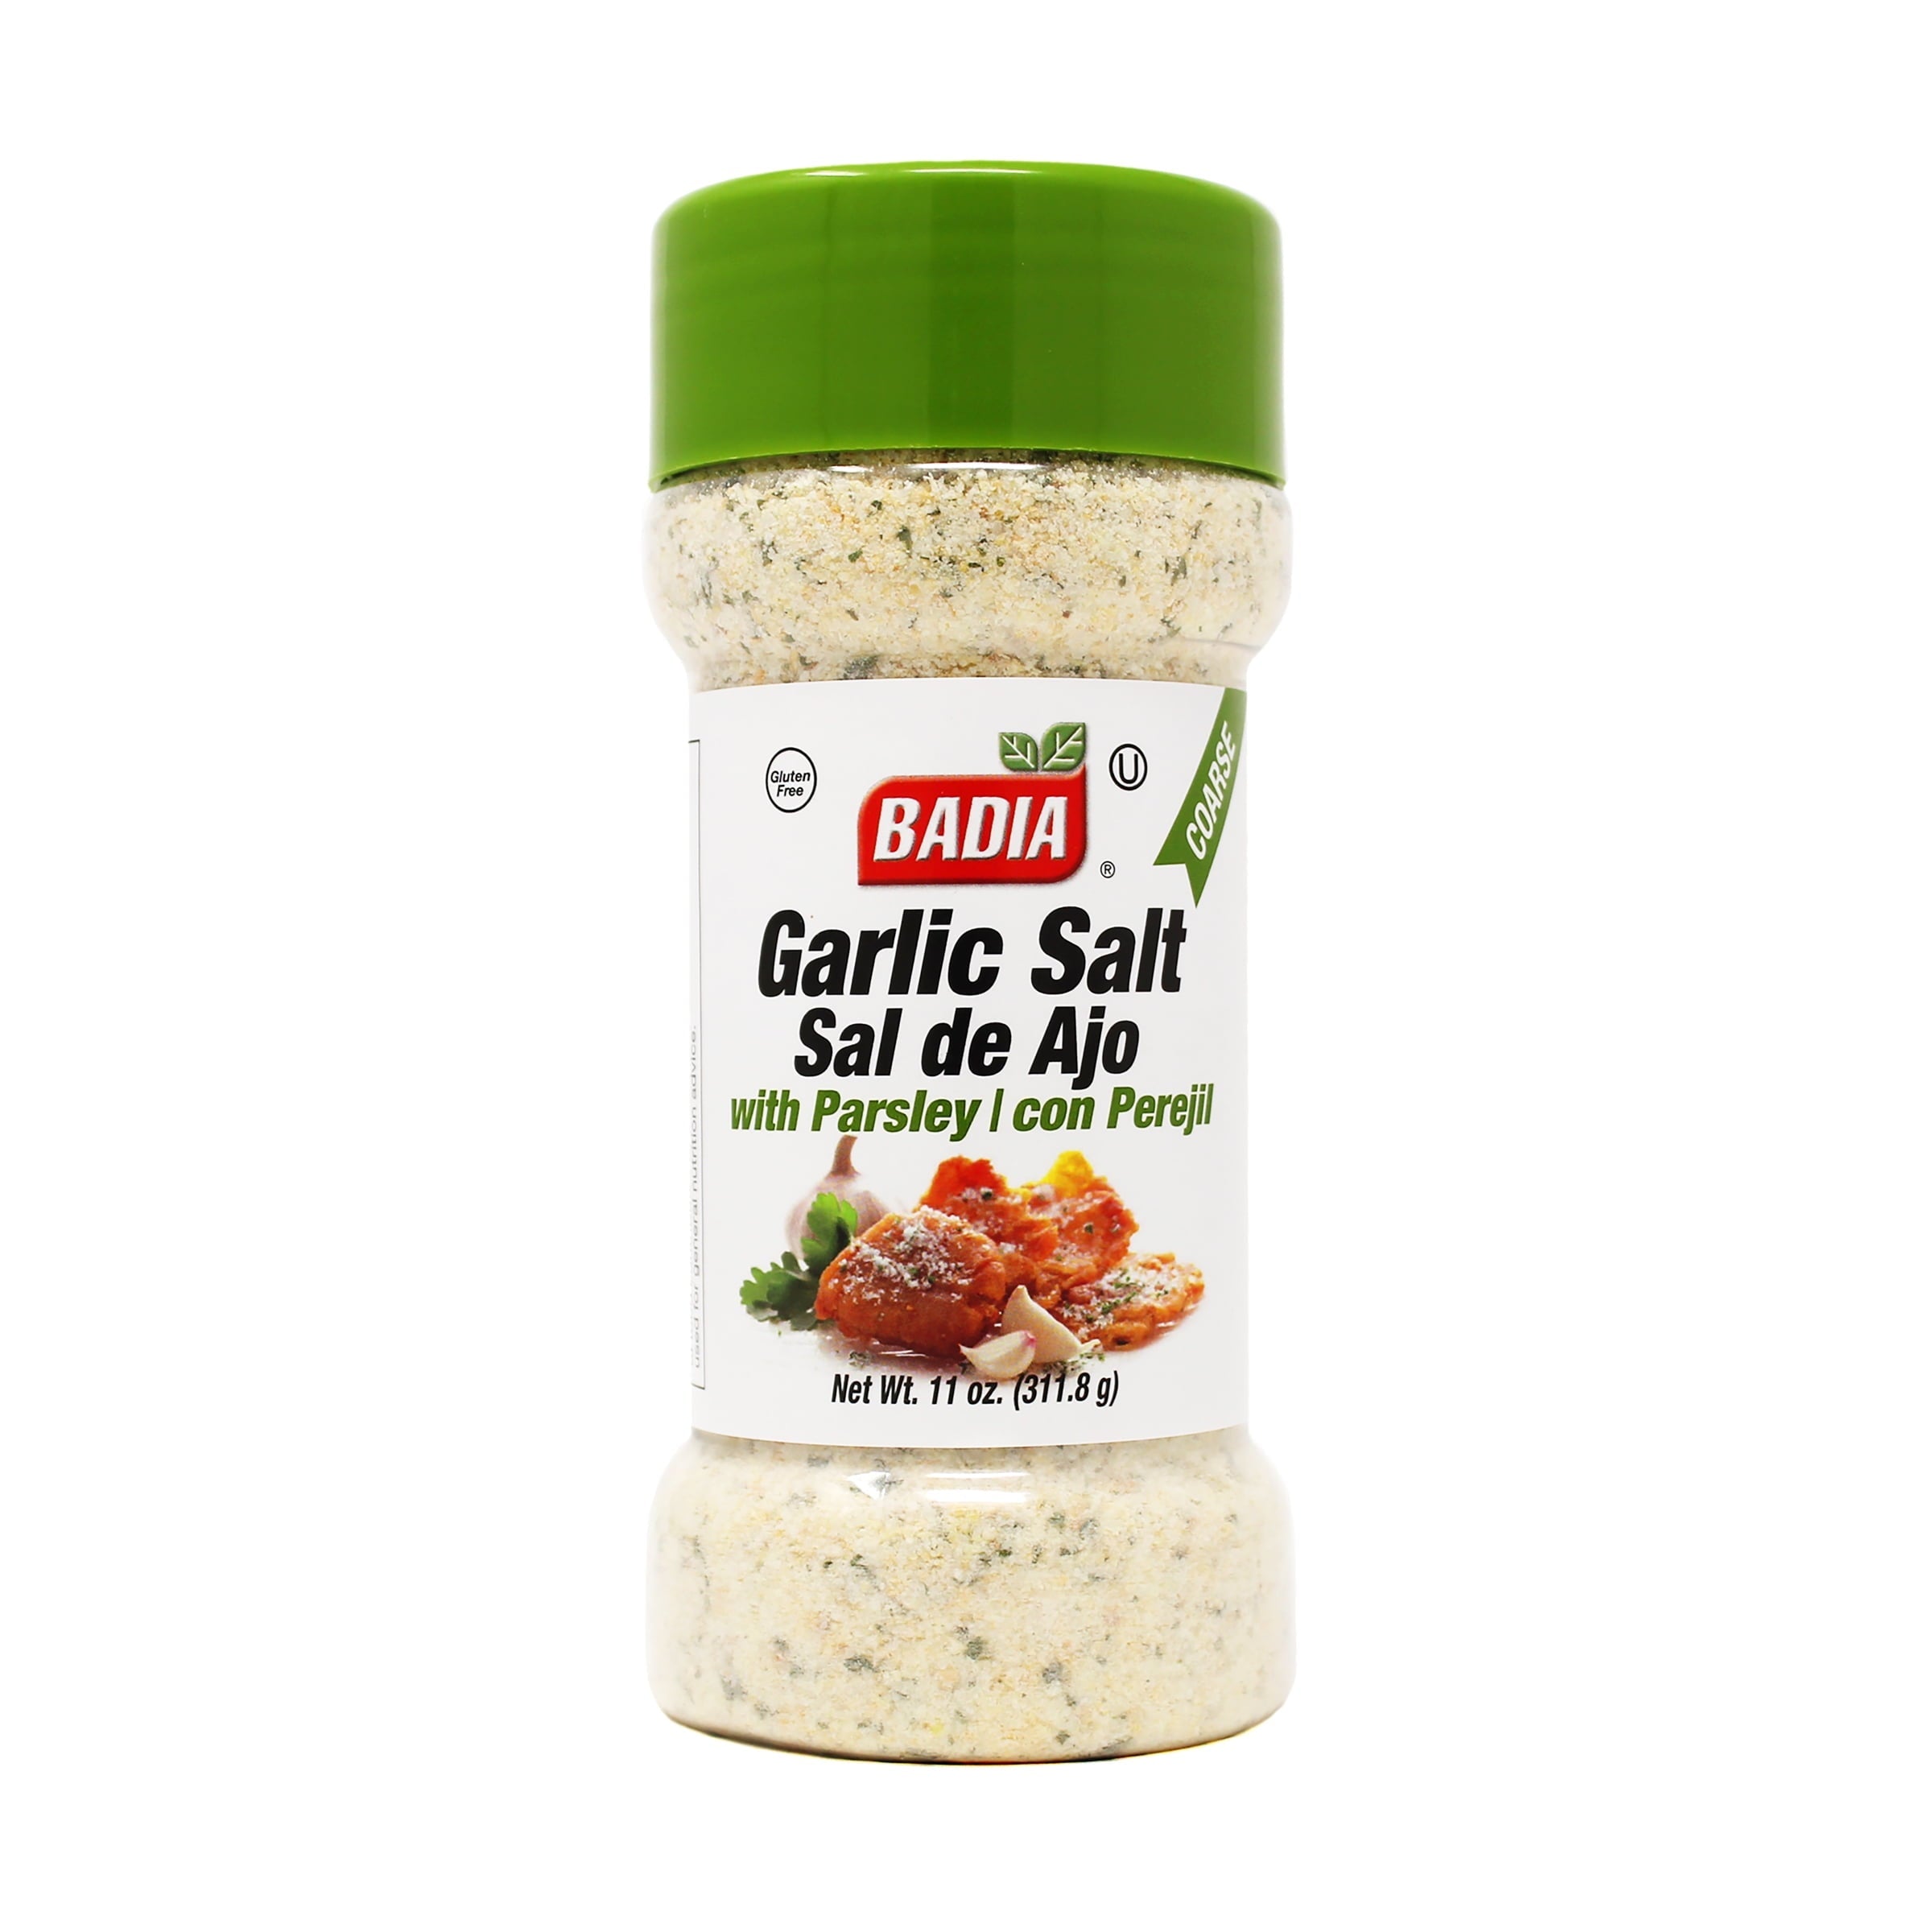 Badia Garlic Salt With Parsley 11 Oz Jar